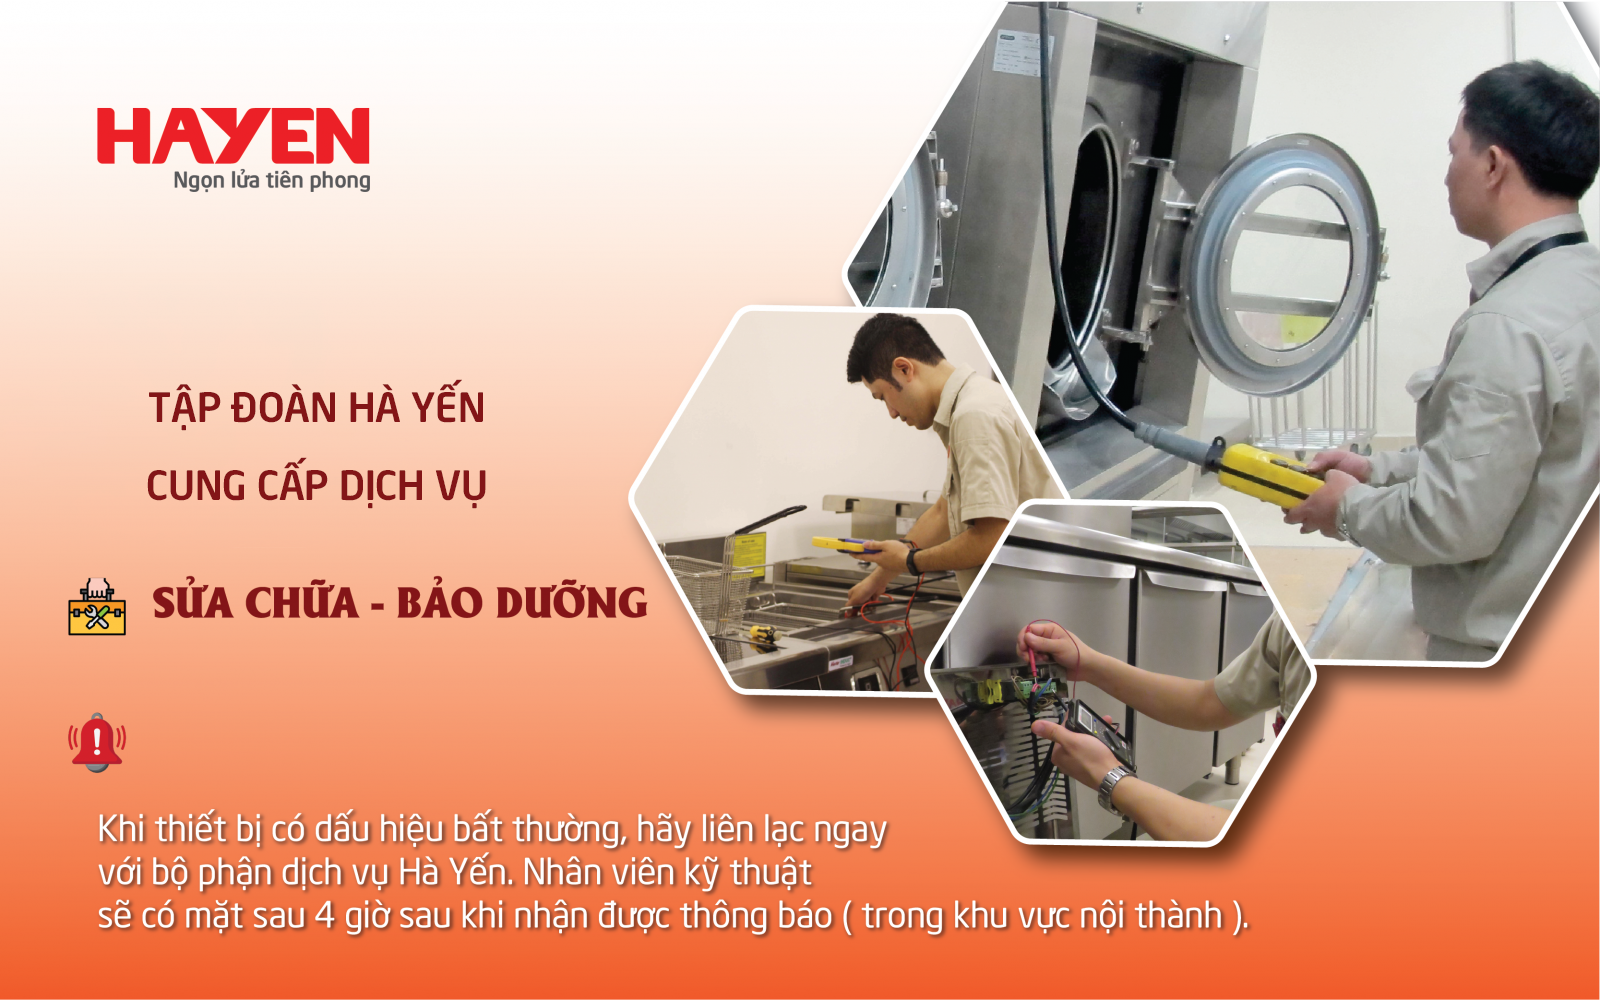 Hà Yến chuyên sửa chữa thiết bị bếp, giặt là công nghiệp